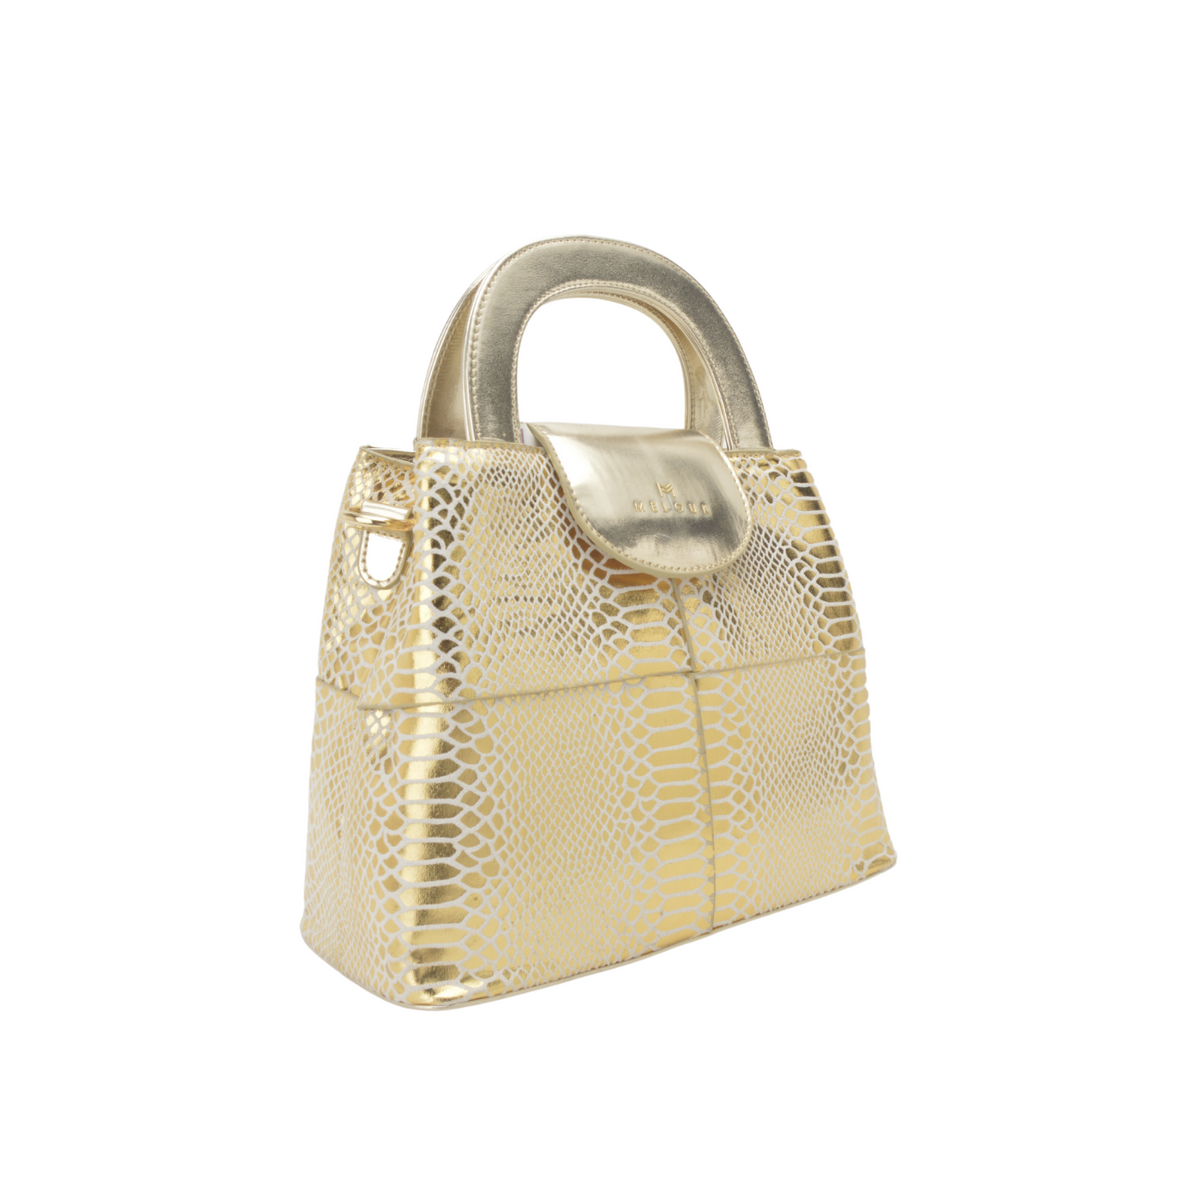 Gold Embossed Leather Handbag - Melouk